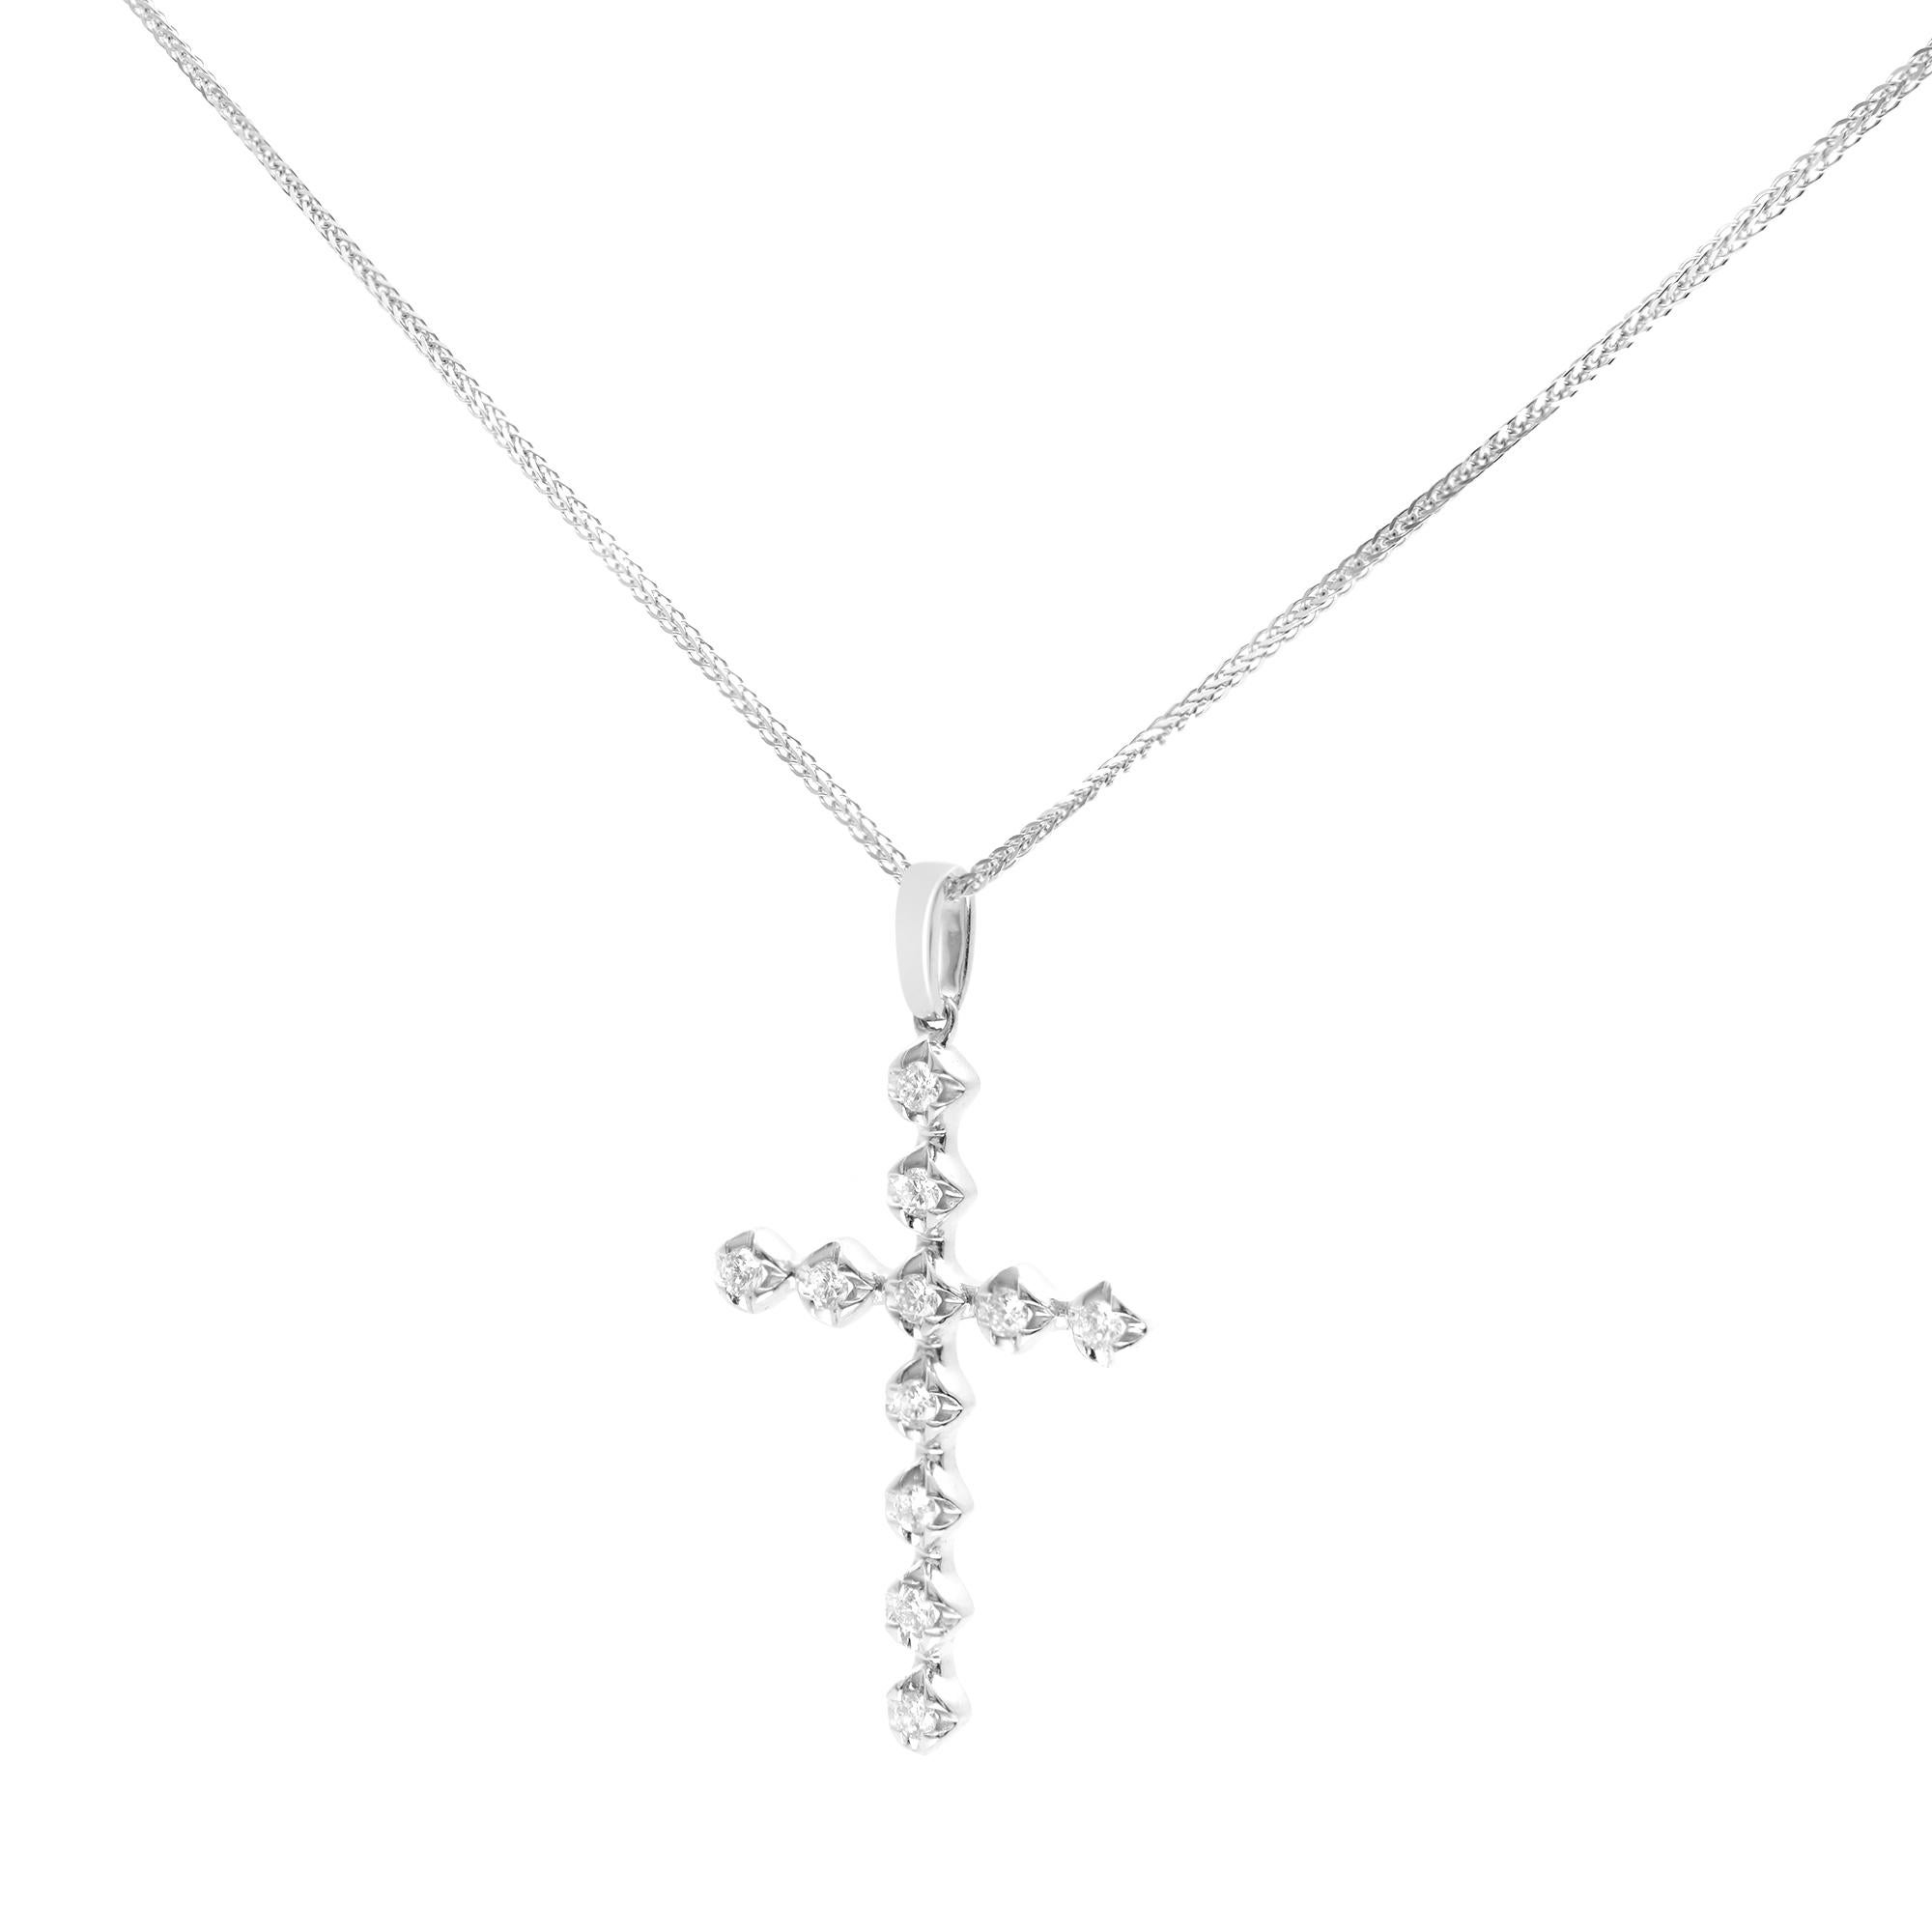 Modern Rachel Koen 14k White Gold Diamond Cross Pendant 0.37cttw For Sale